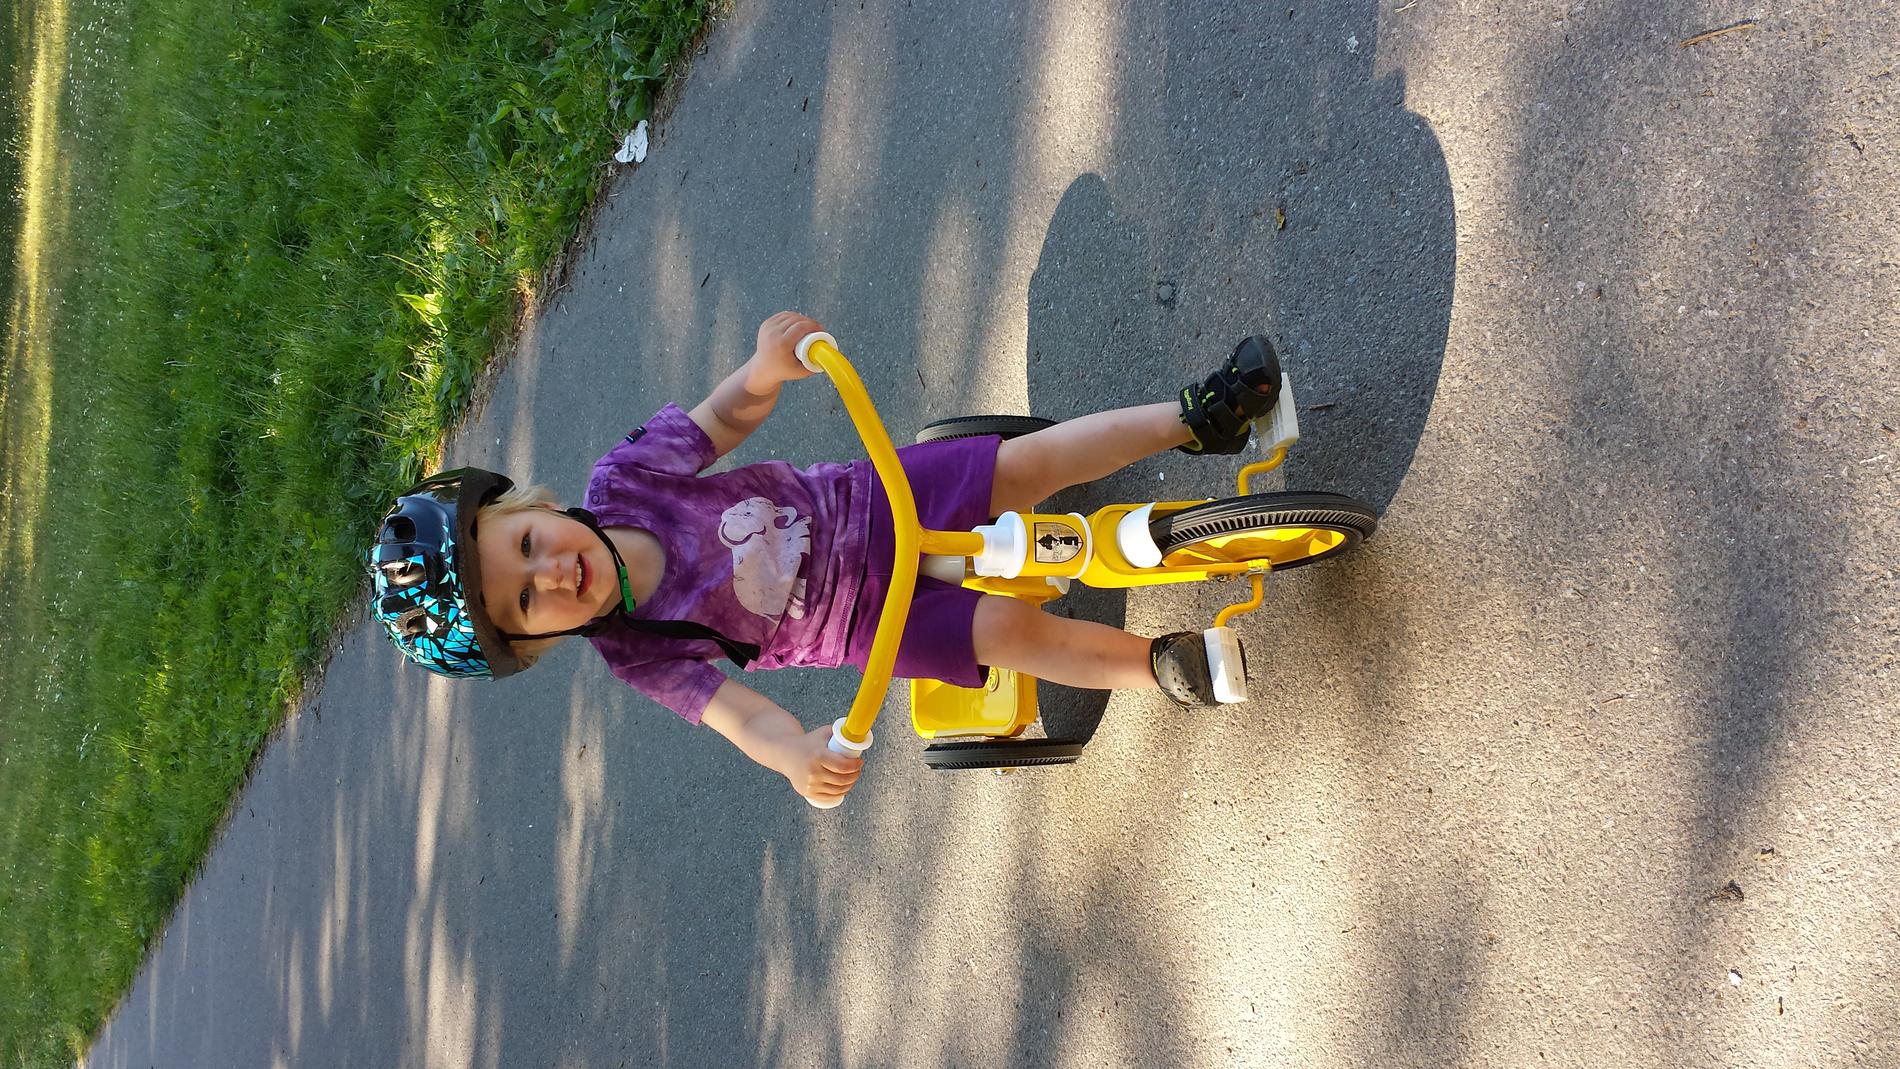 Den gula cykeln är Felix favorit denna sommar!